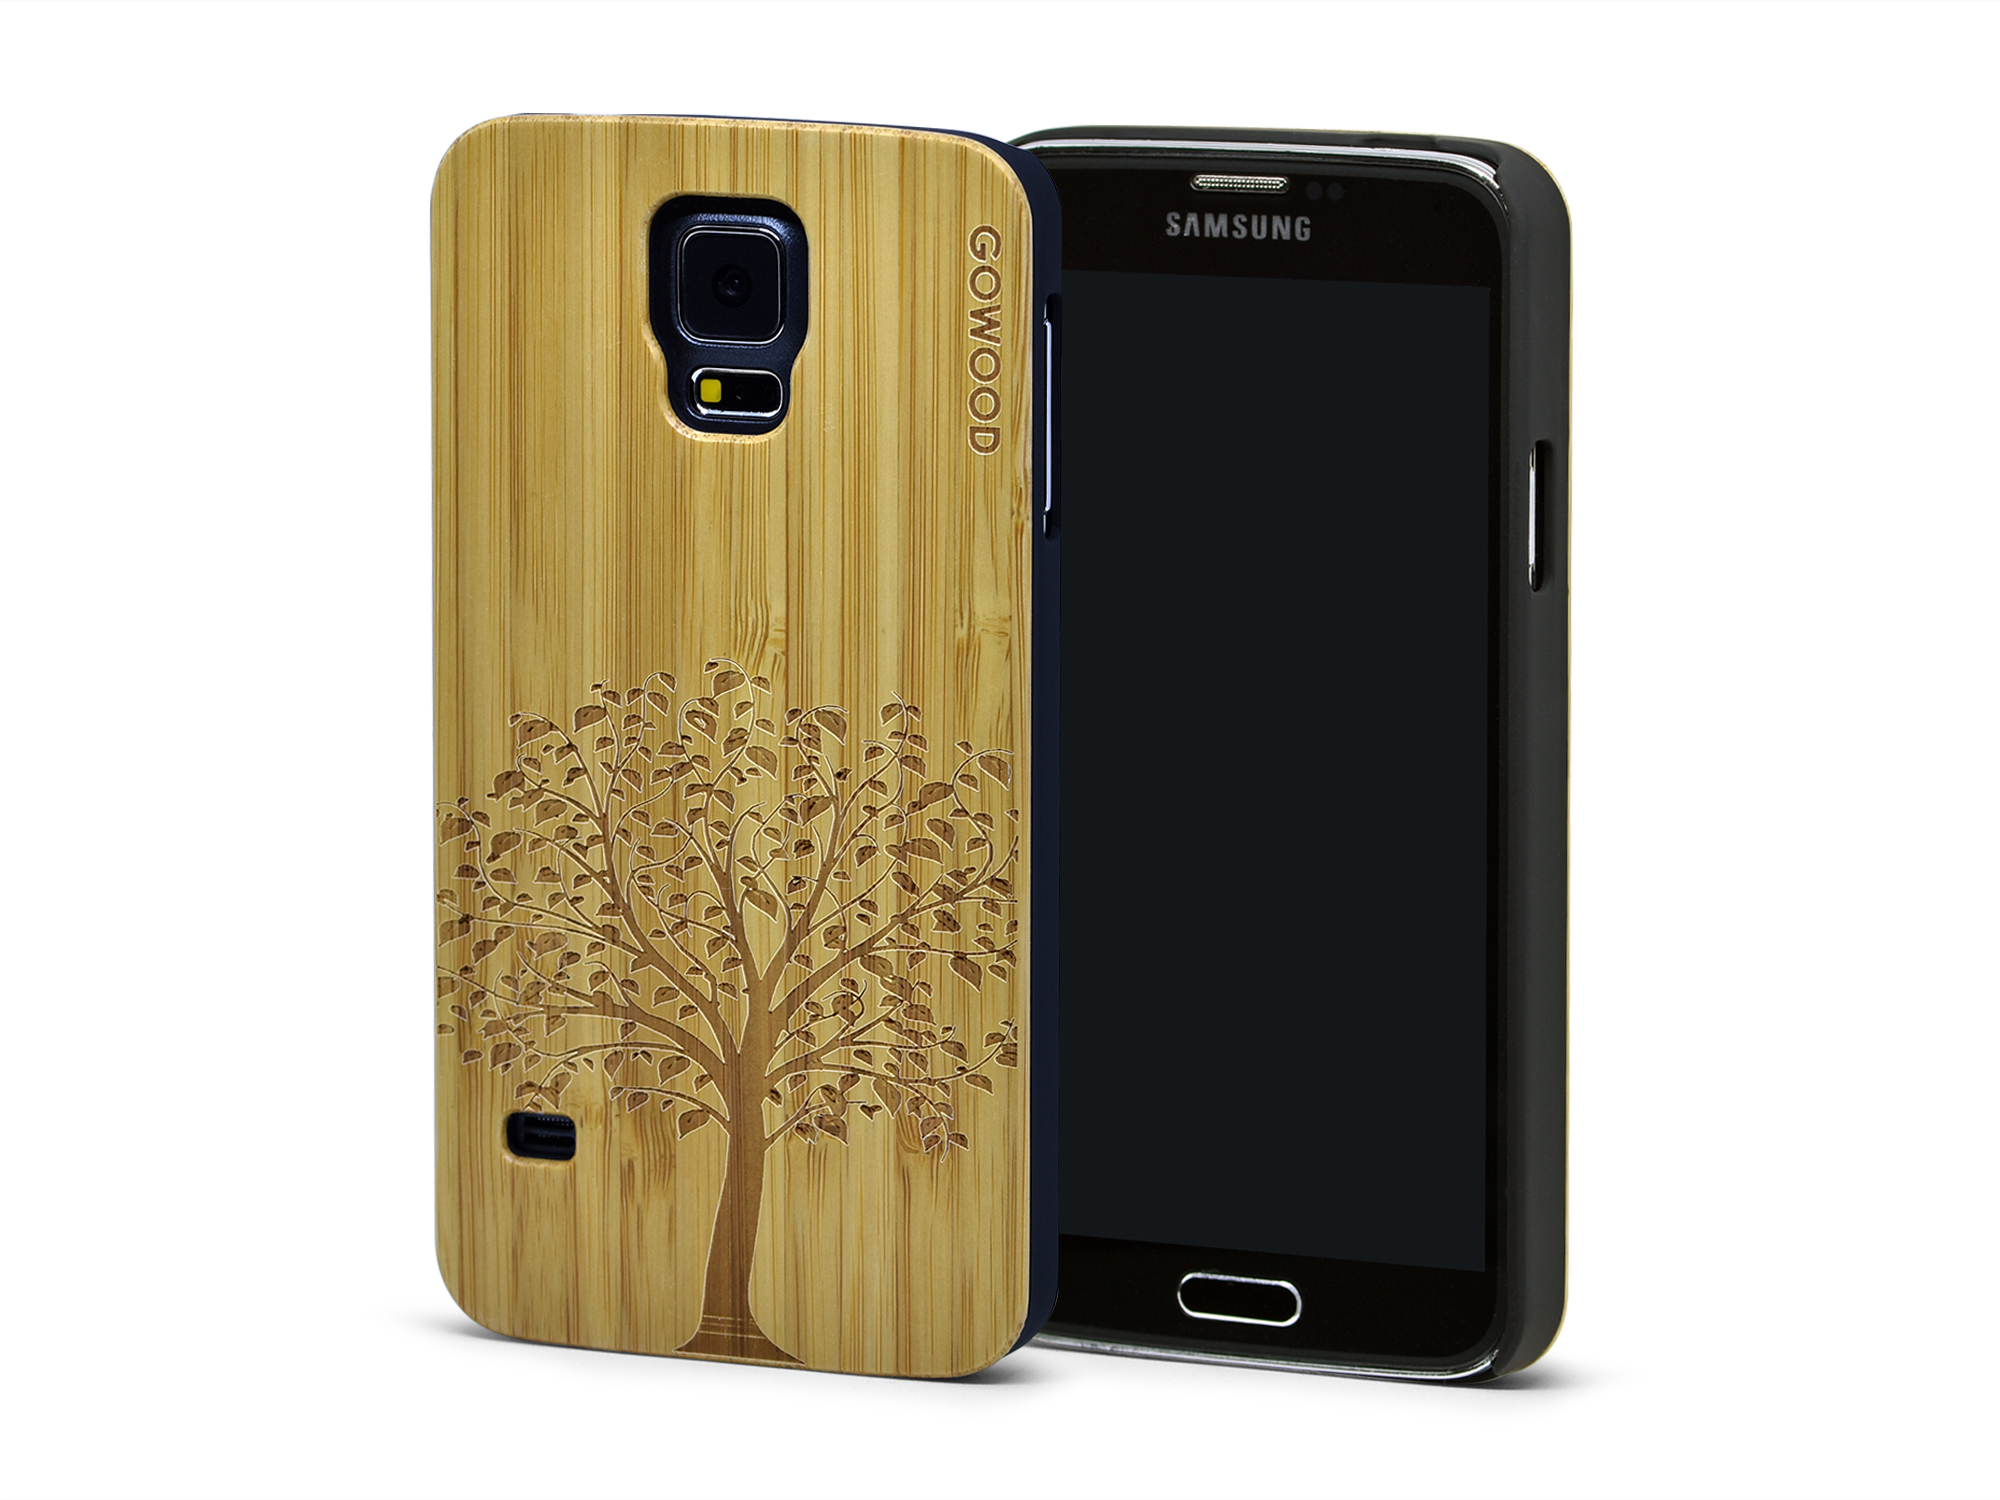 genezen kleuring Harmonisch Samsung Galaxy S5 case wood tree art and PC sides | GW